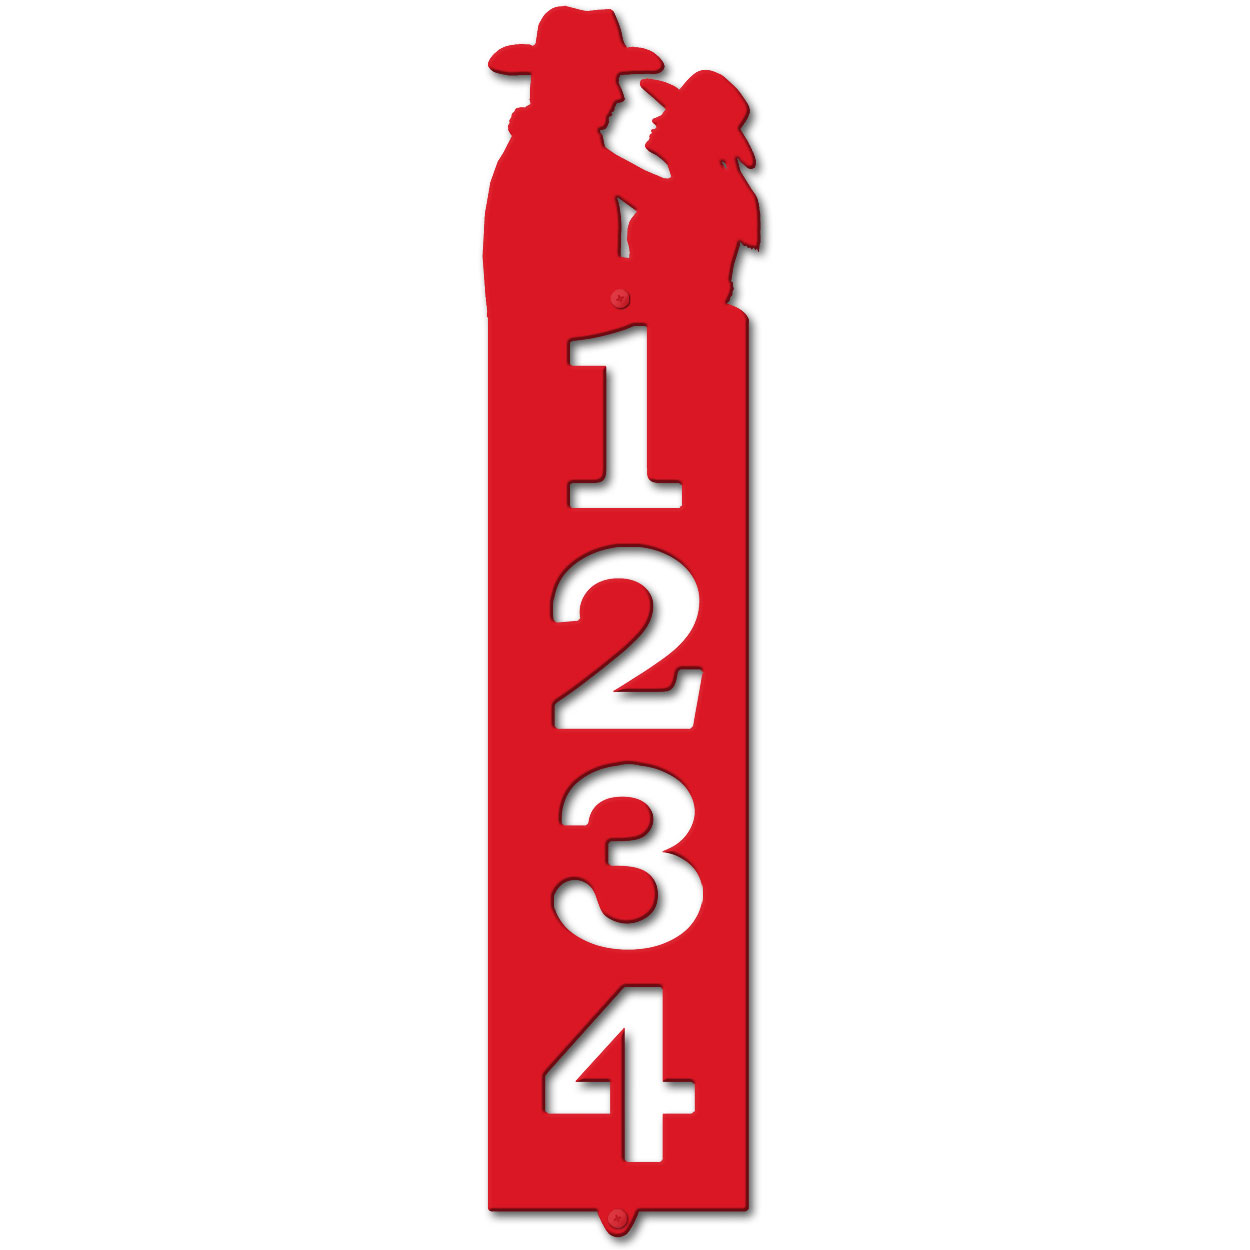 635084 - Cowboy Couple Cut Outs Four Digit Address Number Plaque